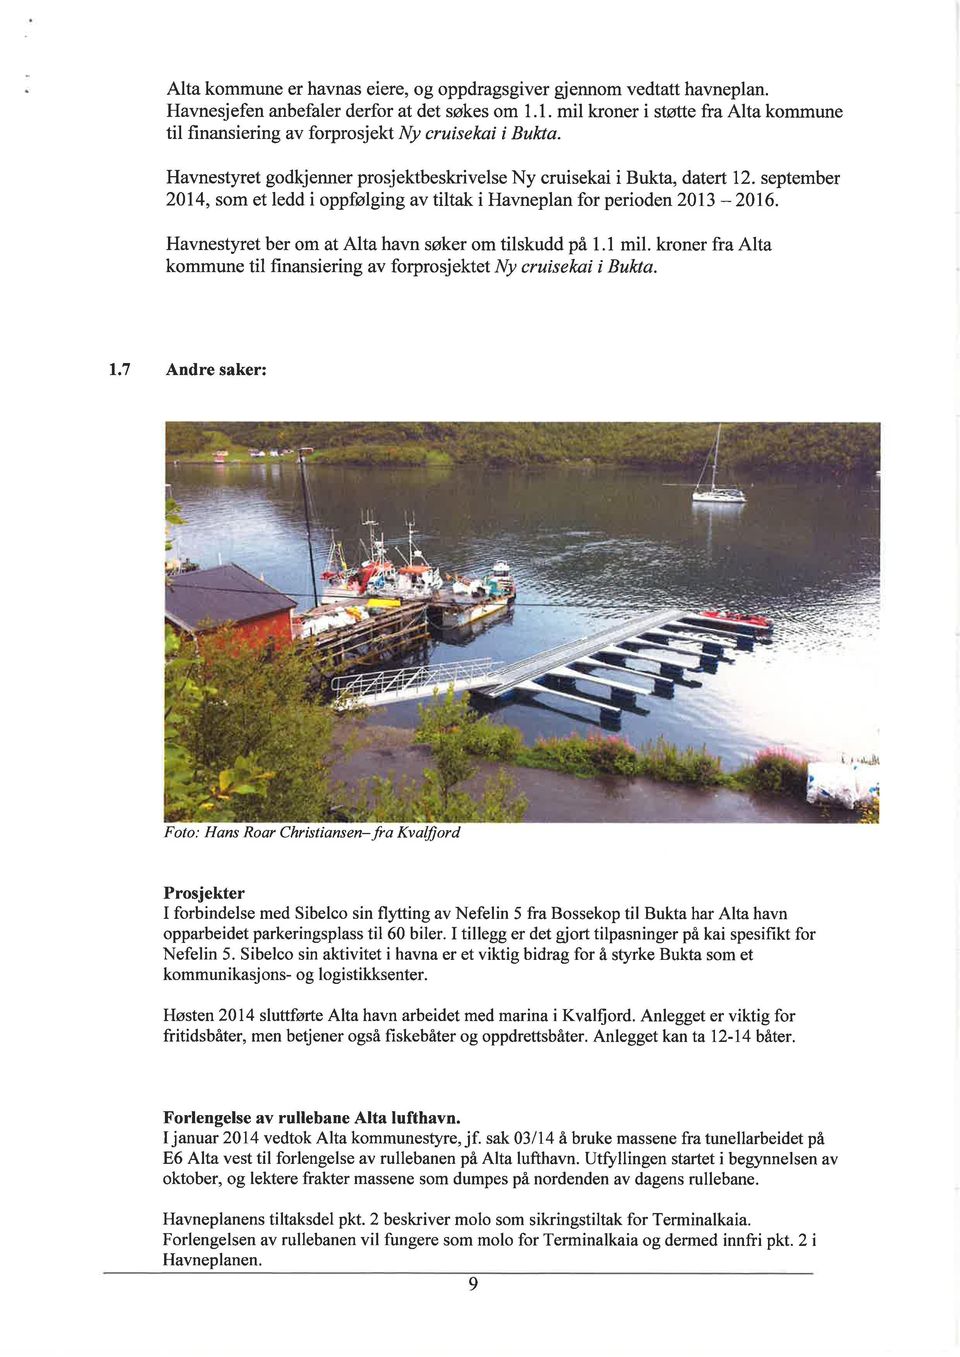 september 2014, som et ledd i oppfølging av tiltak i Havneplan for perioden2}l3-2016. Havnestyret ber om at Alta havn søker om tilskudd på 1.1 mil.